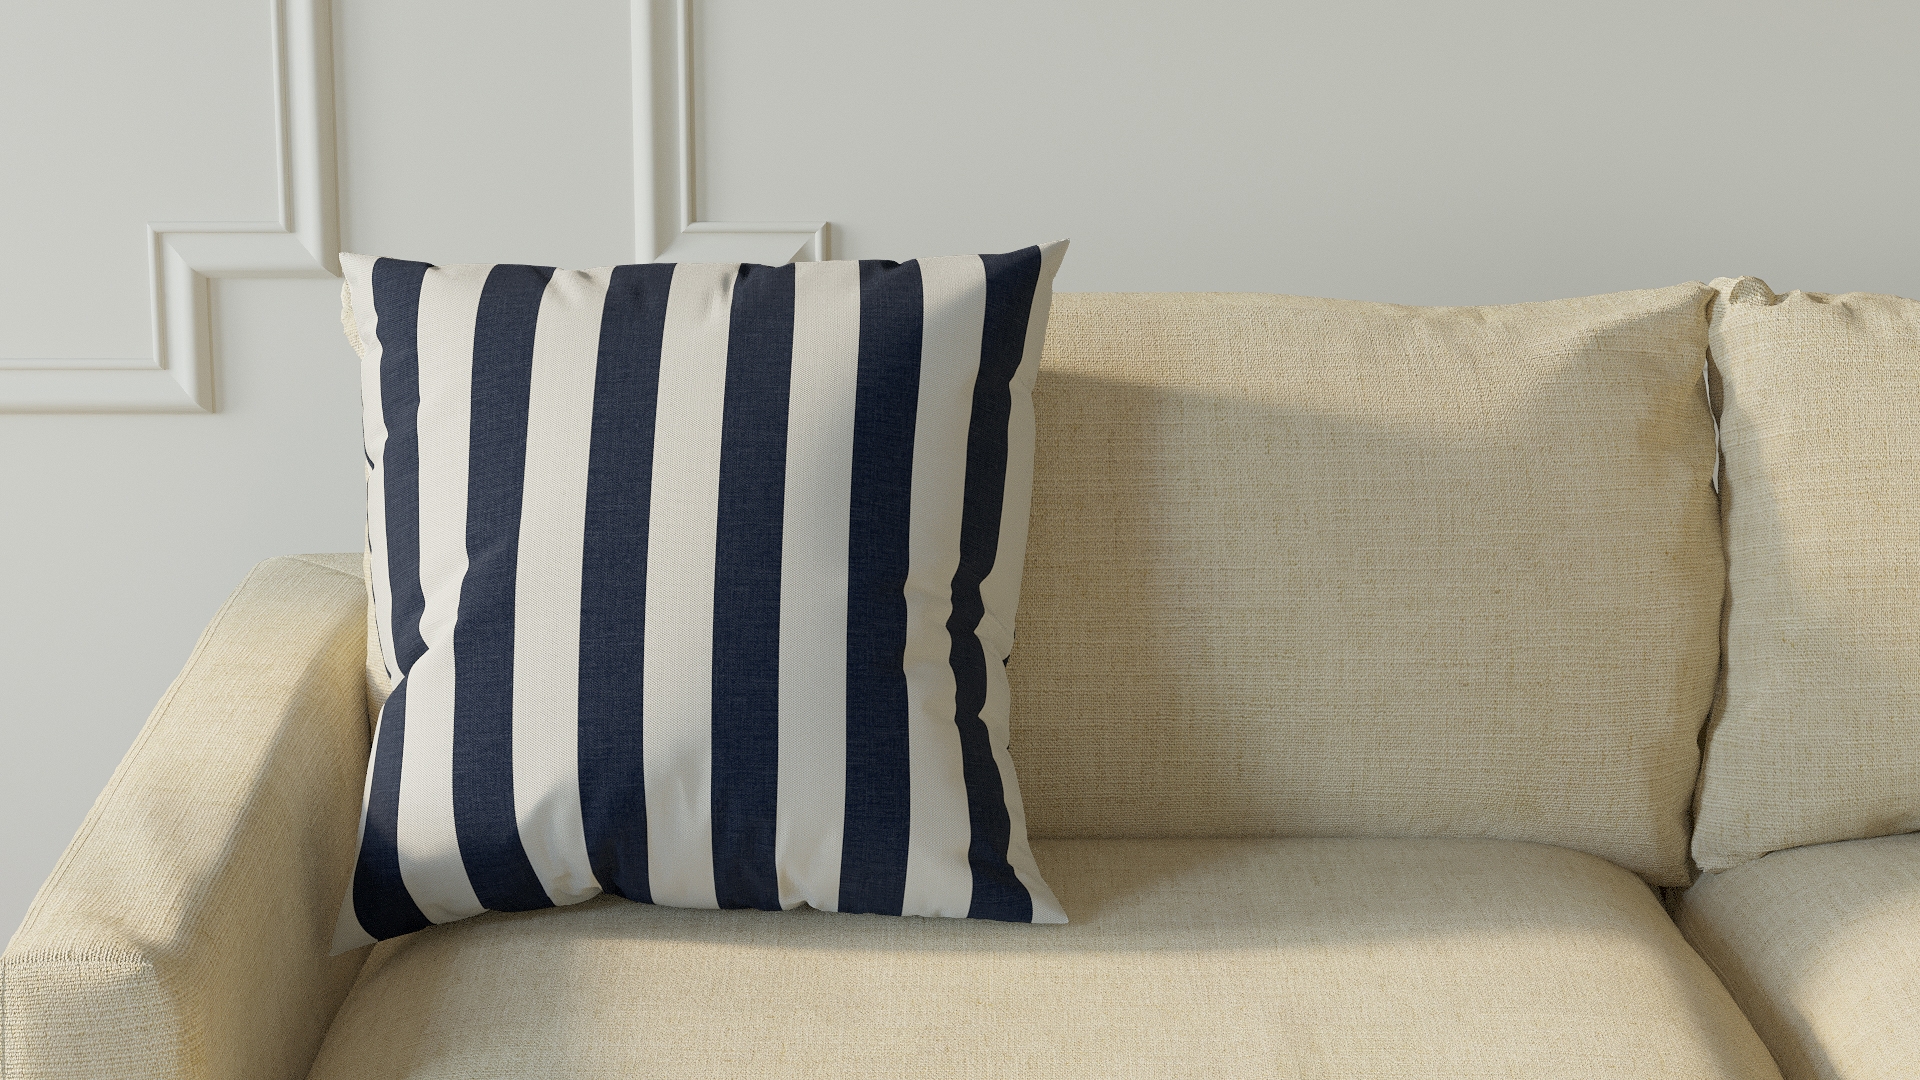 Throw Pillow 20", Navy Cabana Stripe, 20" x 20" - Image 2